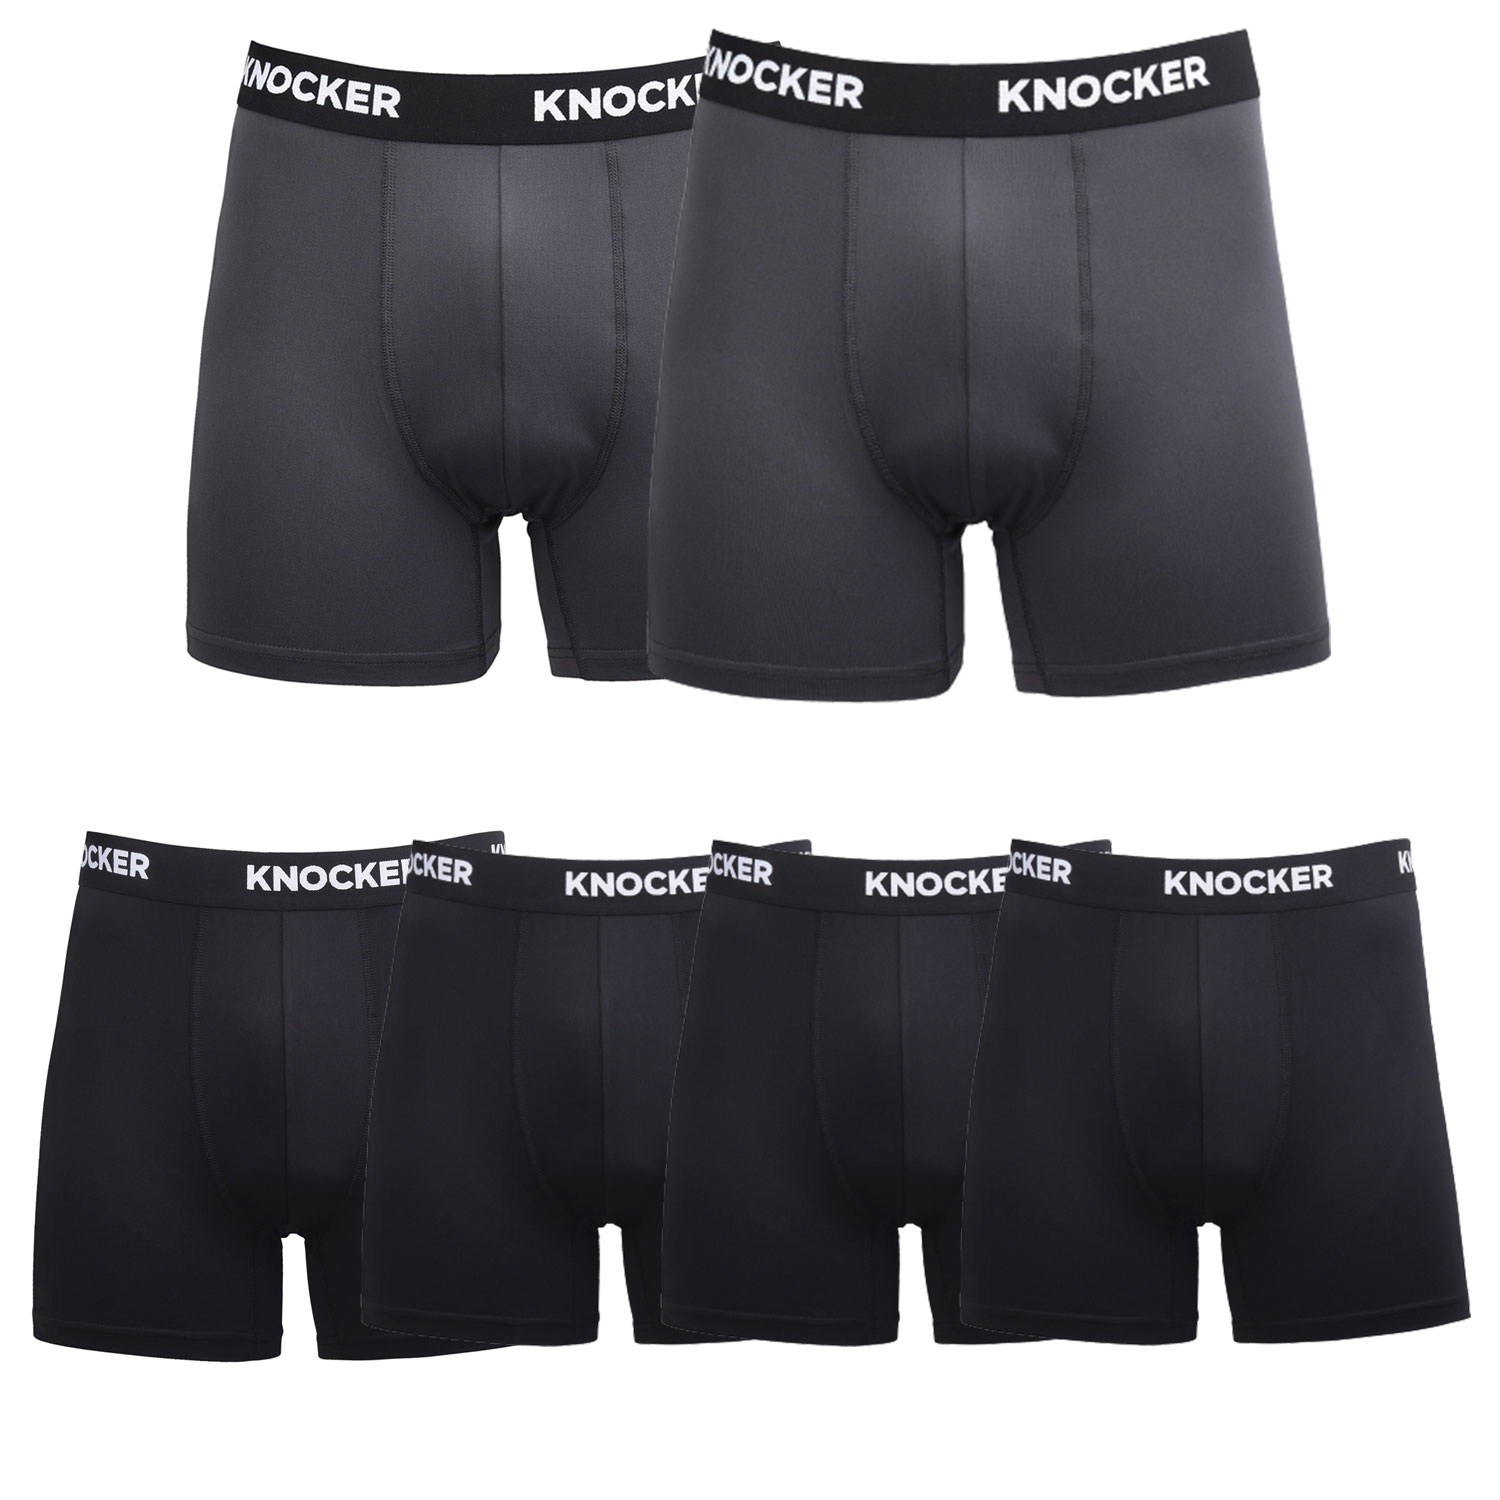 Knocker Men's Performance Boxer Briefs Pack Of 6